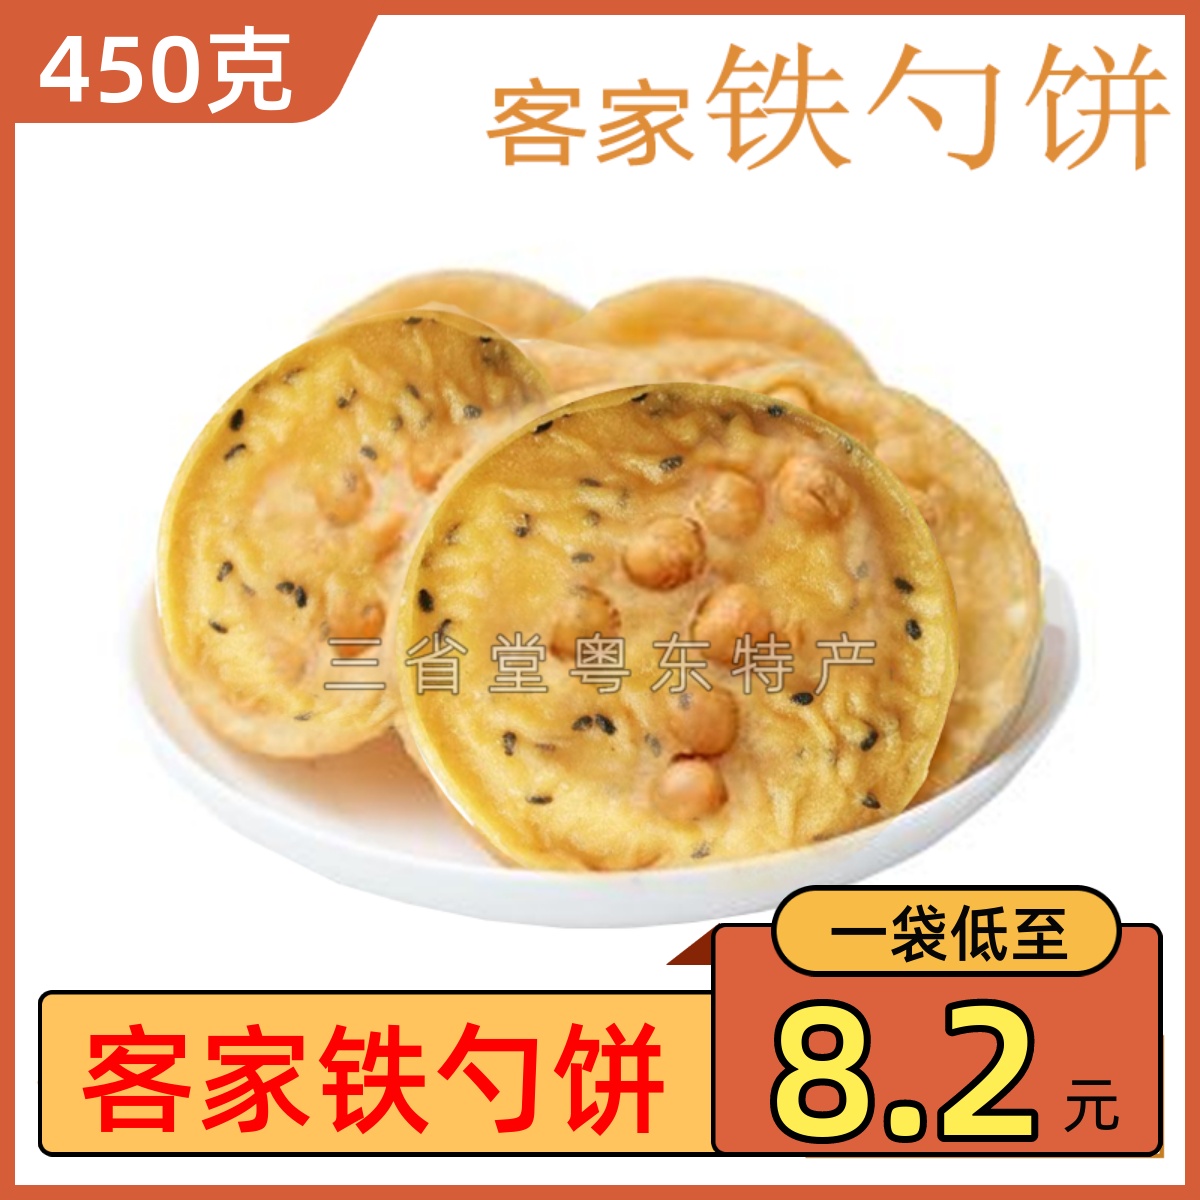 客家铁勺饼 花生黄豆饼 月亮巴 芋丝 饼干油炸锅巴广东梅州特产